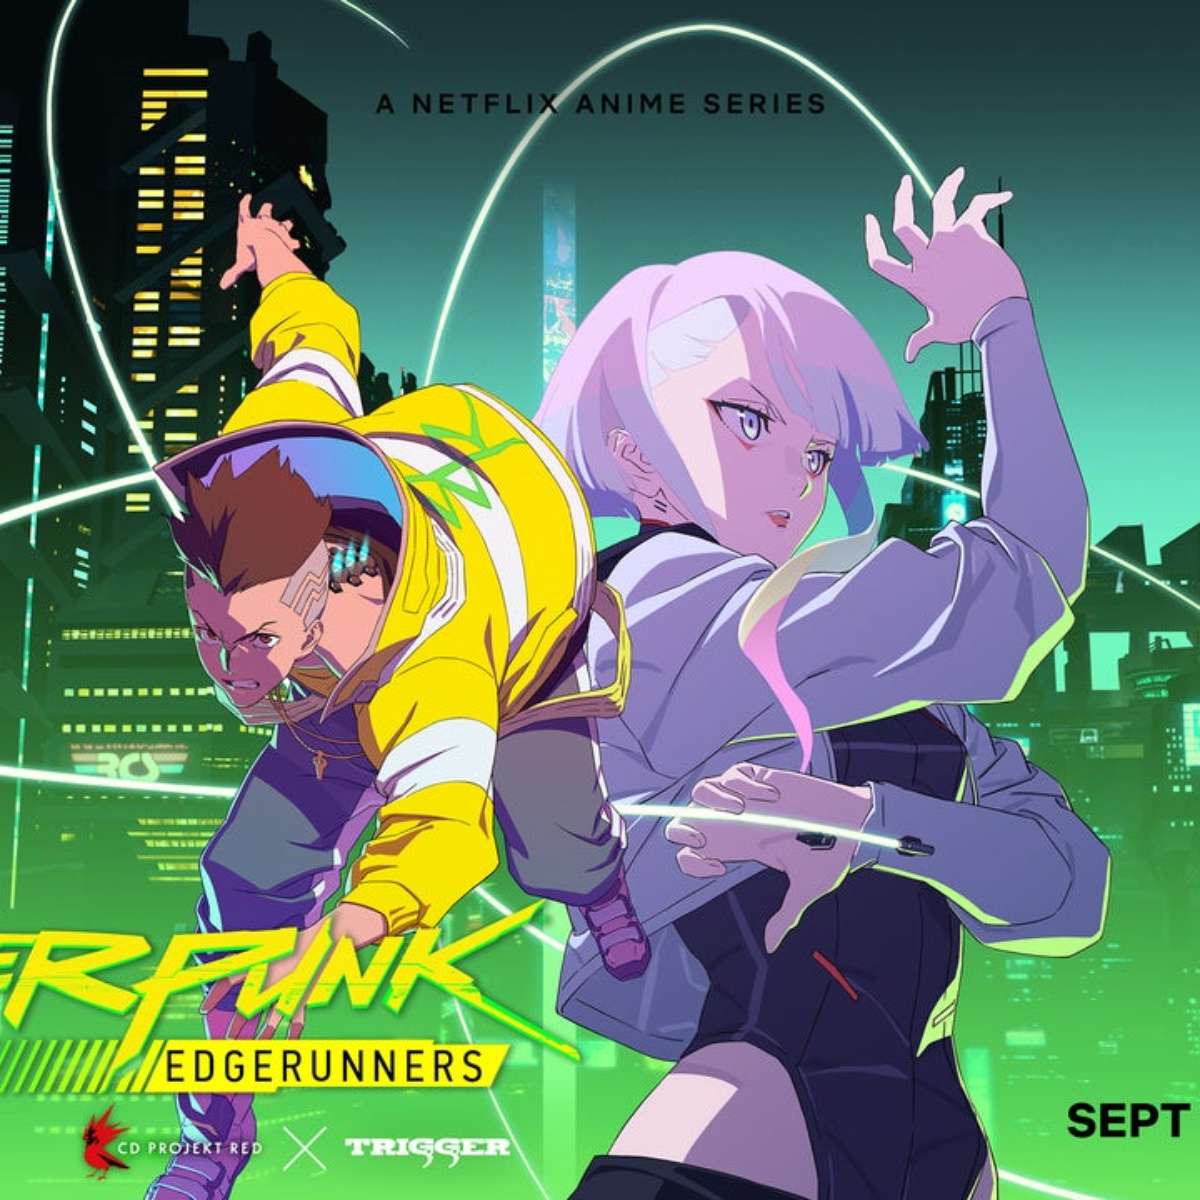 Netflix libera trailer oficial do anime Cyberpunk Edgerunners 